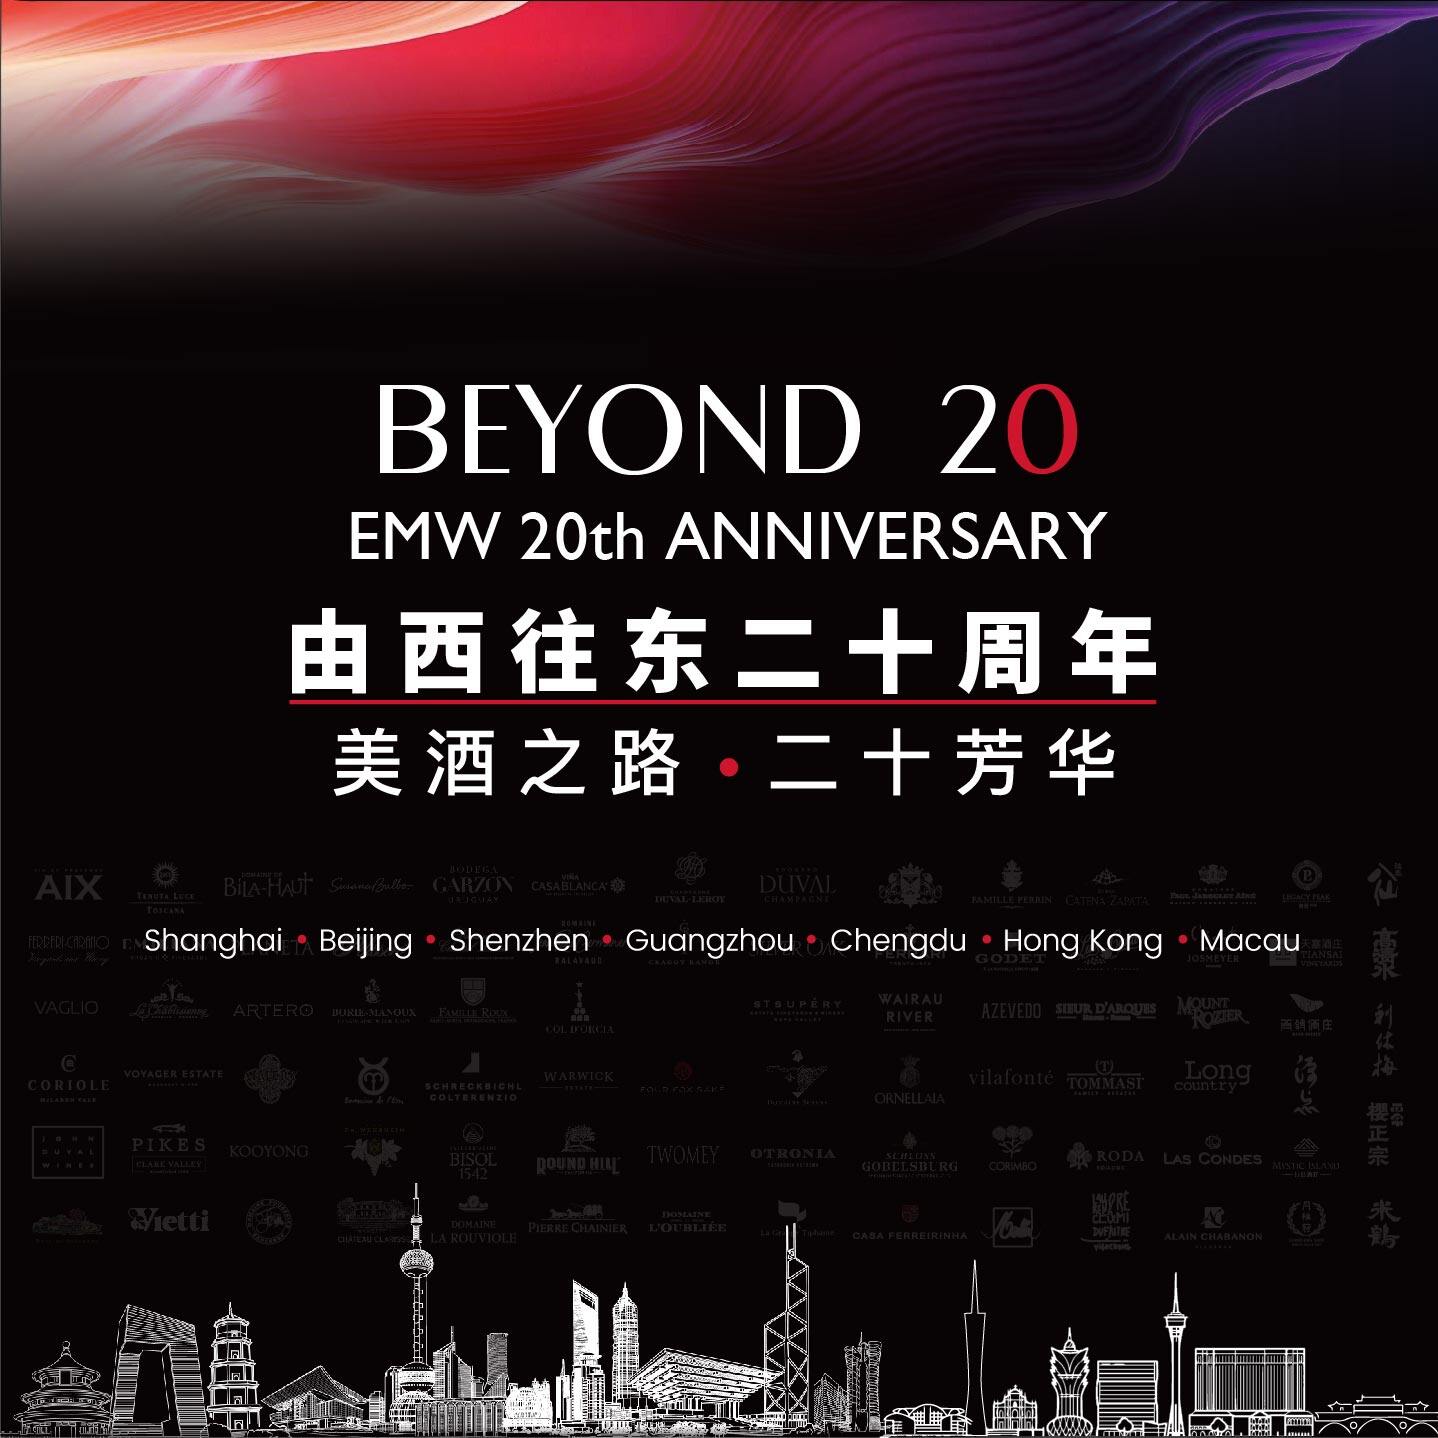 「Beyond 20：美酒之路 二十芳华」 EMW 20周年系列活动发布